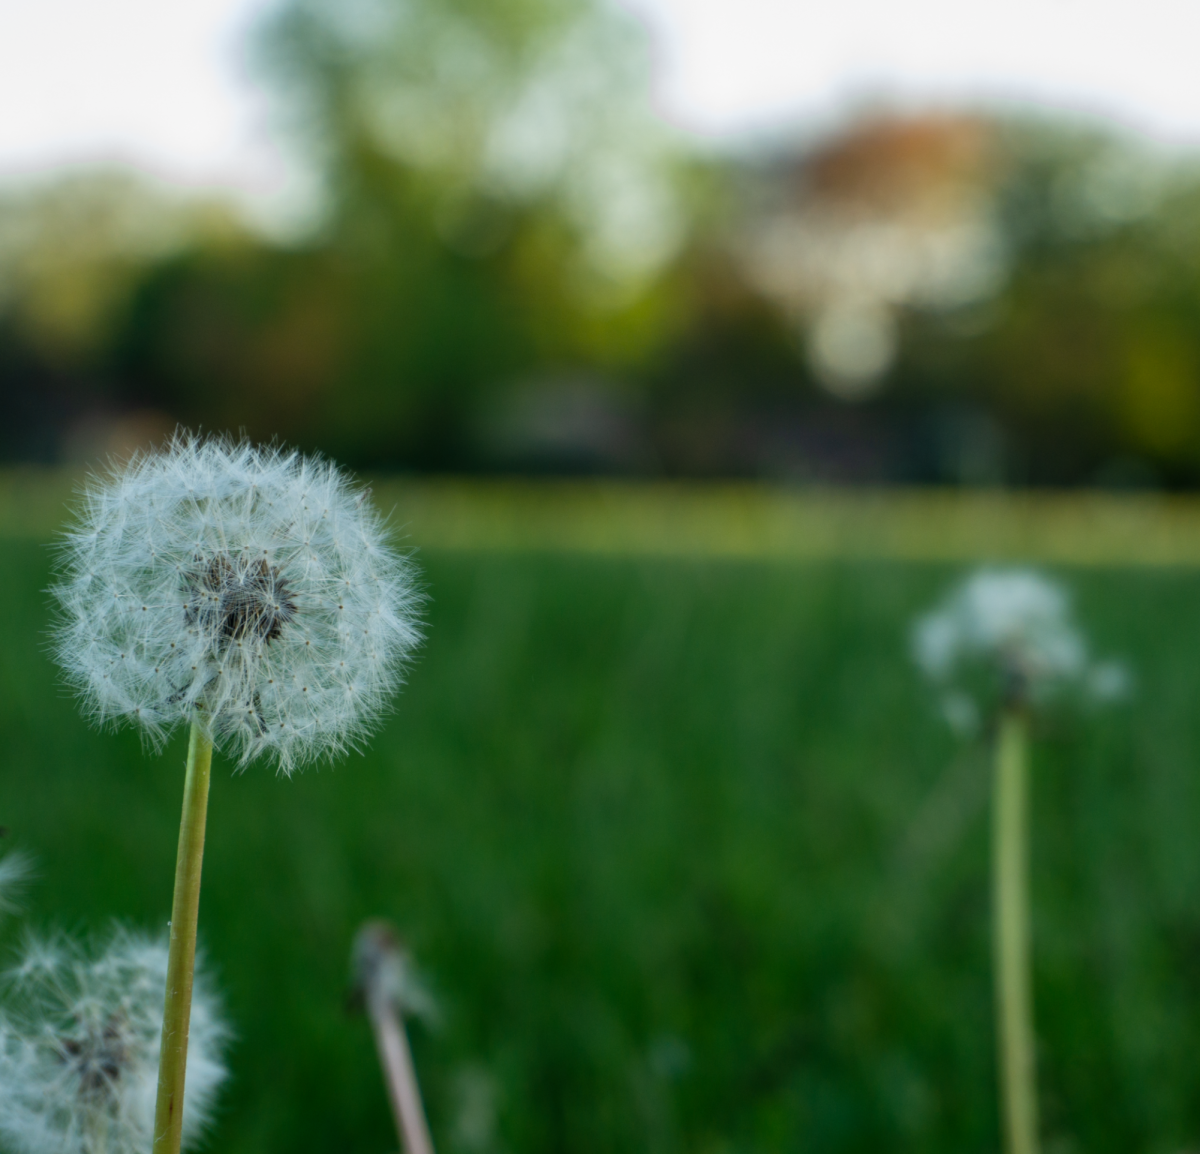 A dandelion in the field.